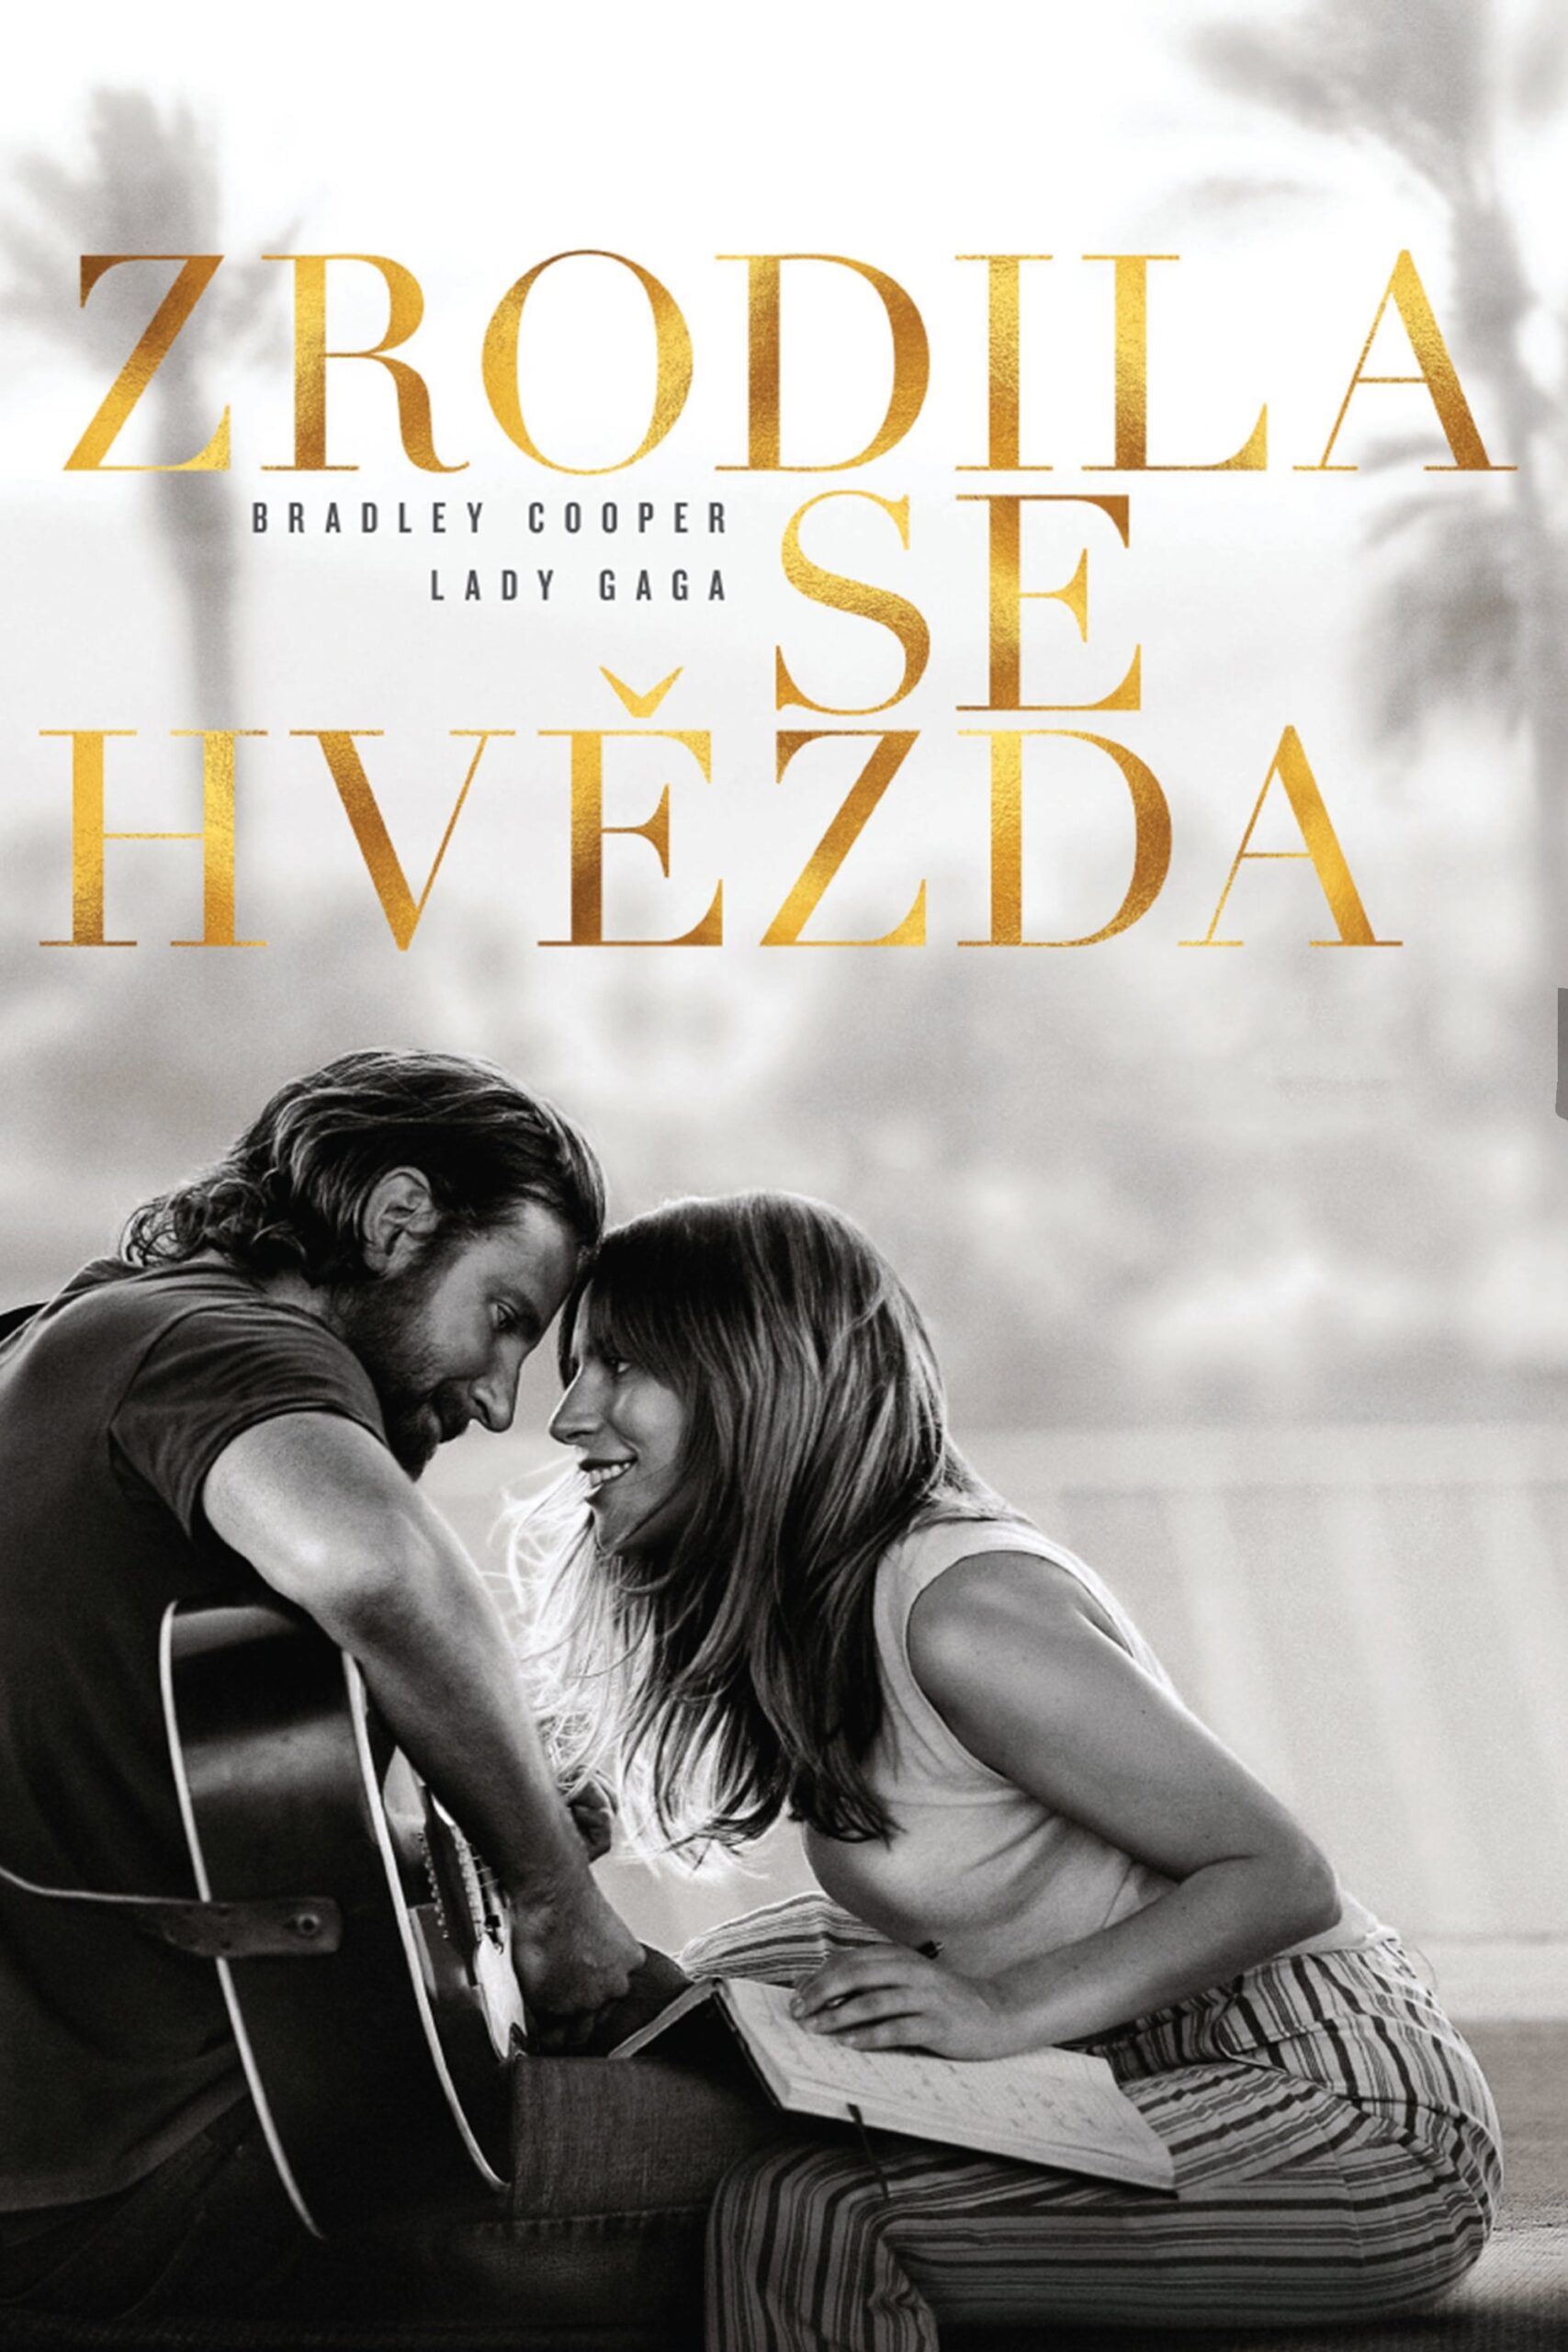 Poster for the movie "Zrodila se hvězda"